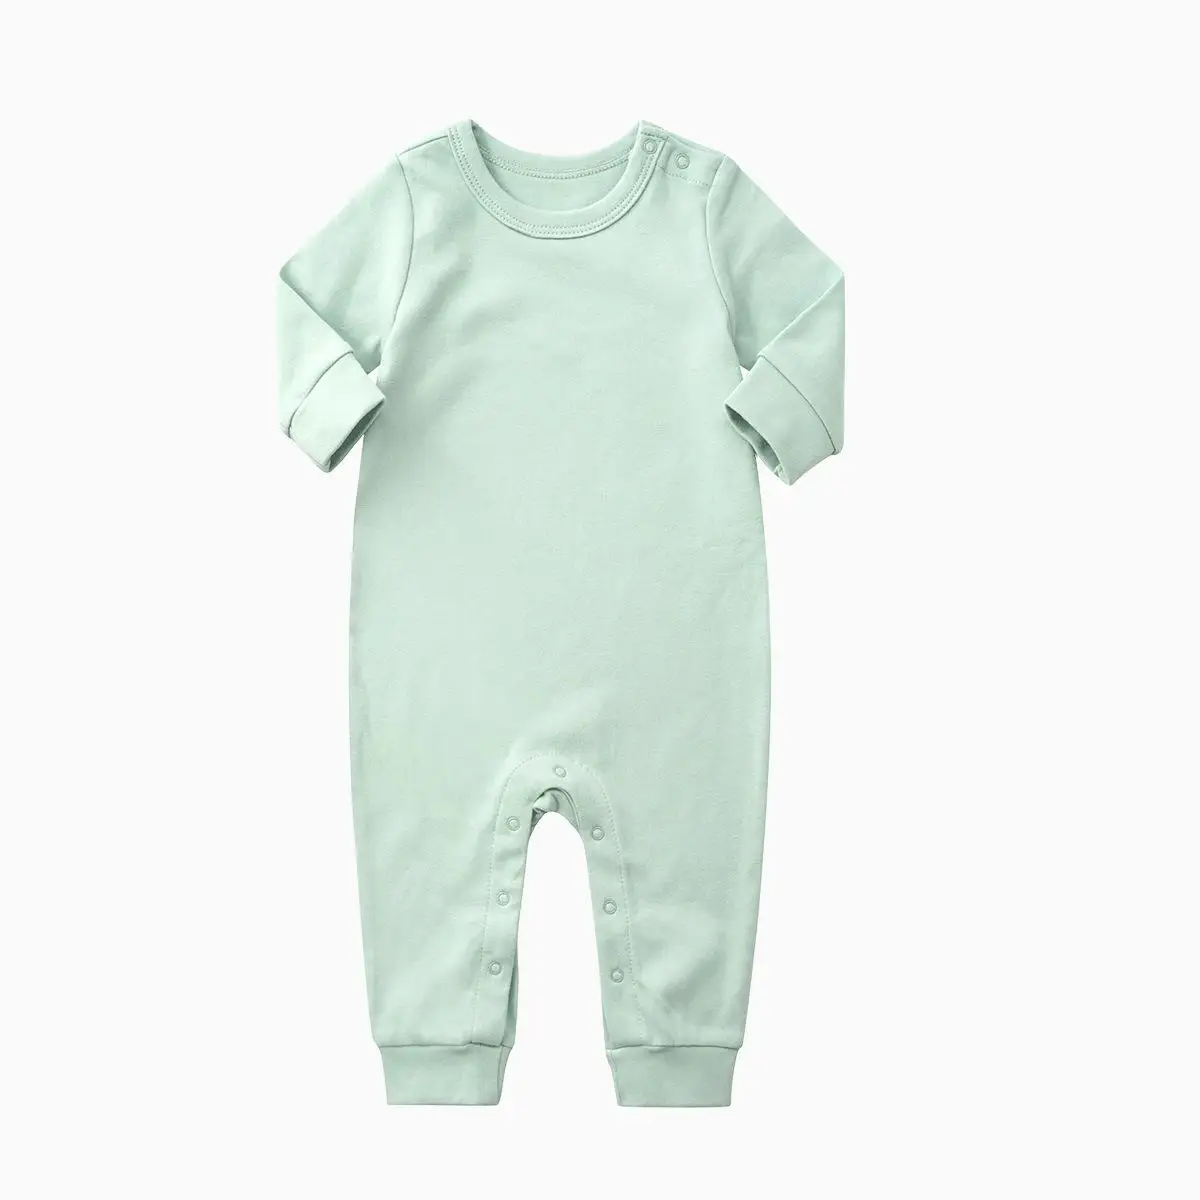 Orangemom 2018 babytøj af høj kvalitet, økologisk Bomuld-Romper Buksedragt med Lange Ærmer i bomuld baby pige tøj til nyfødte 3